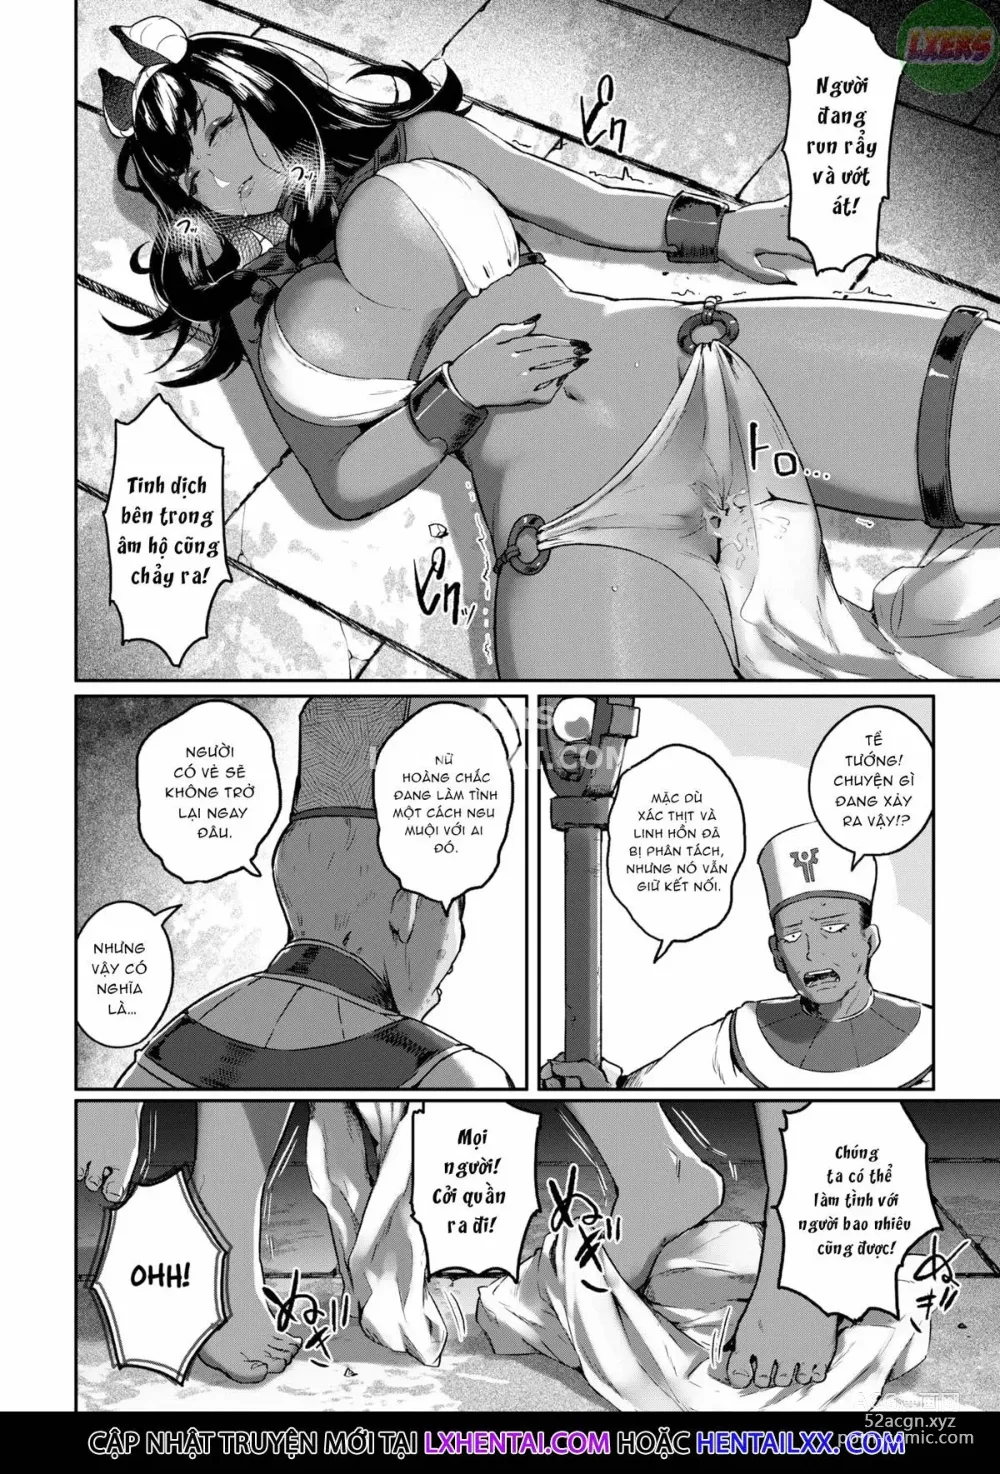 Page 12 of manga Doerogurifu (uncensored)